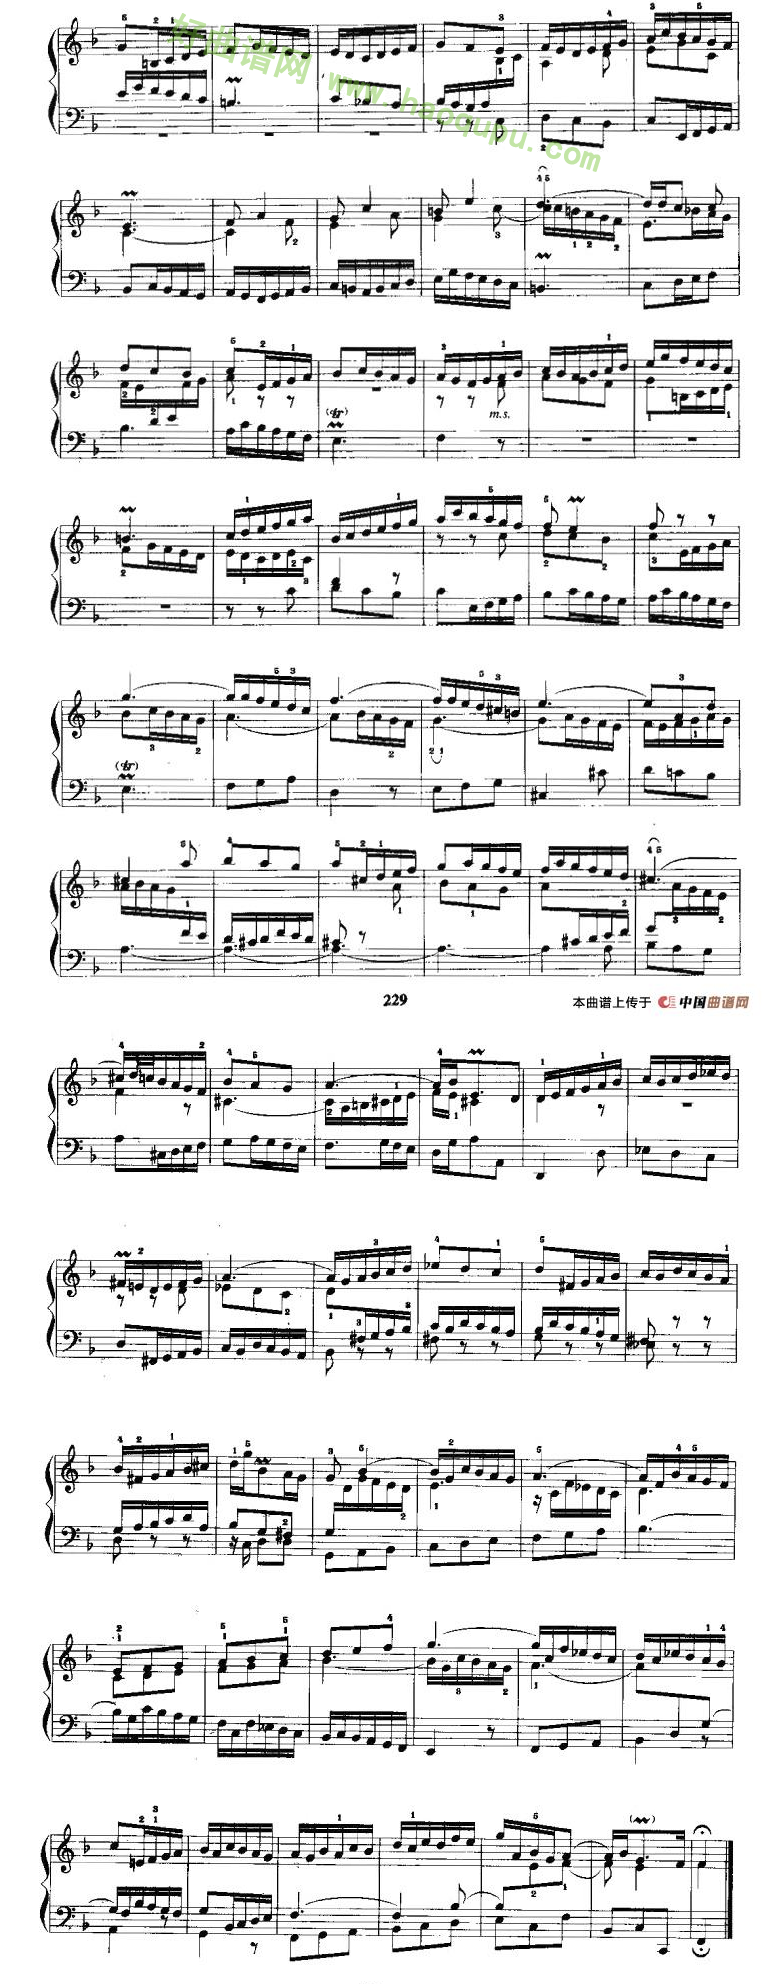 《F大调前奏曲与赋格》 手风琴曲谱第2张